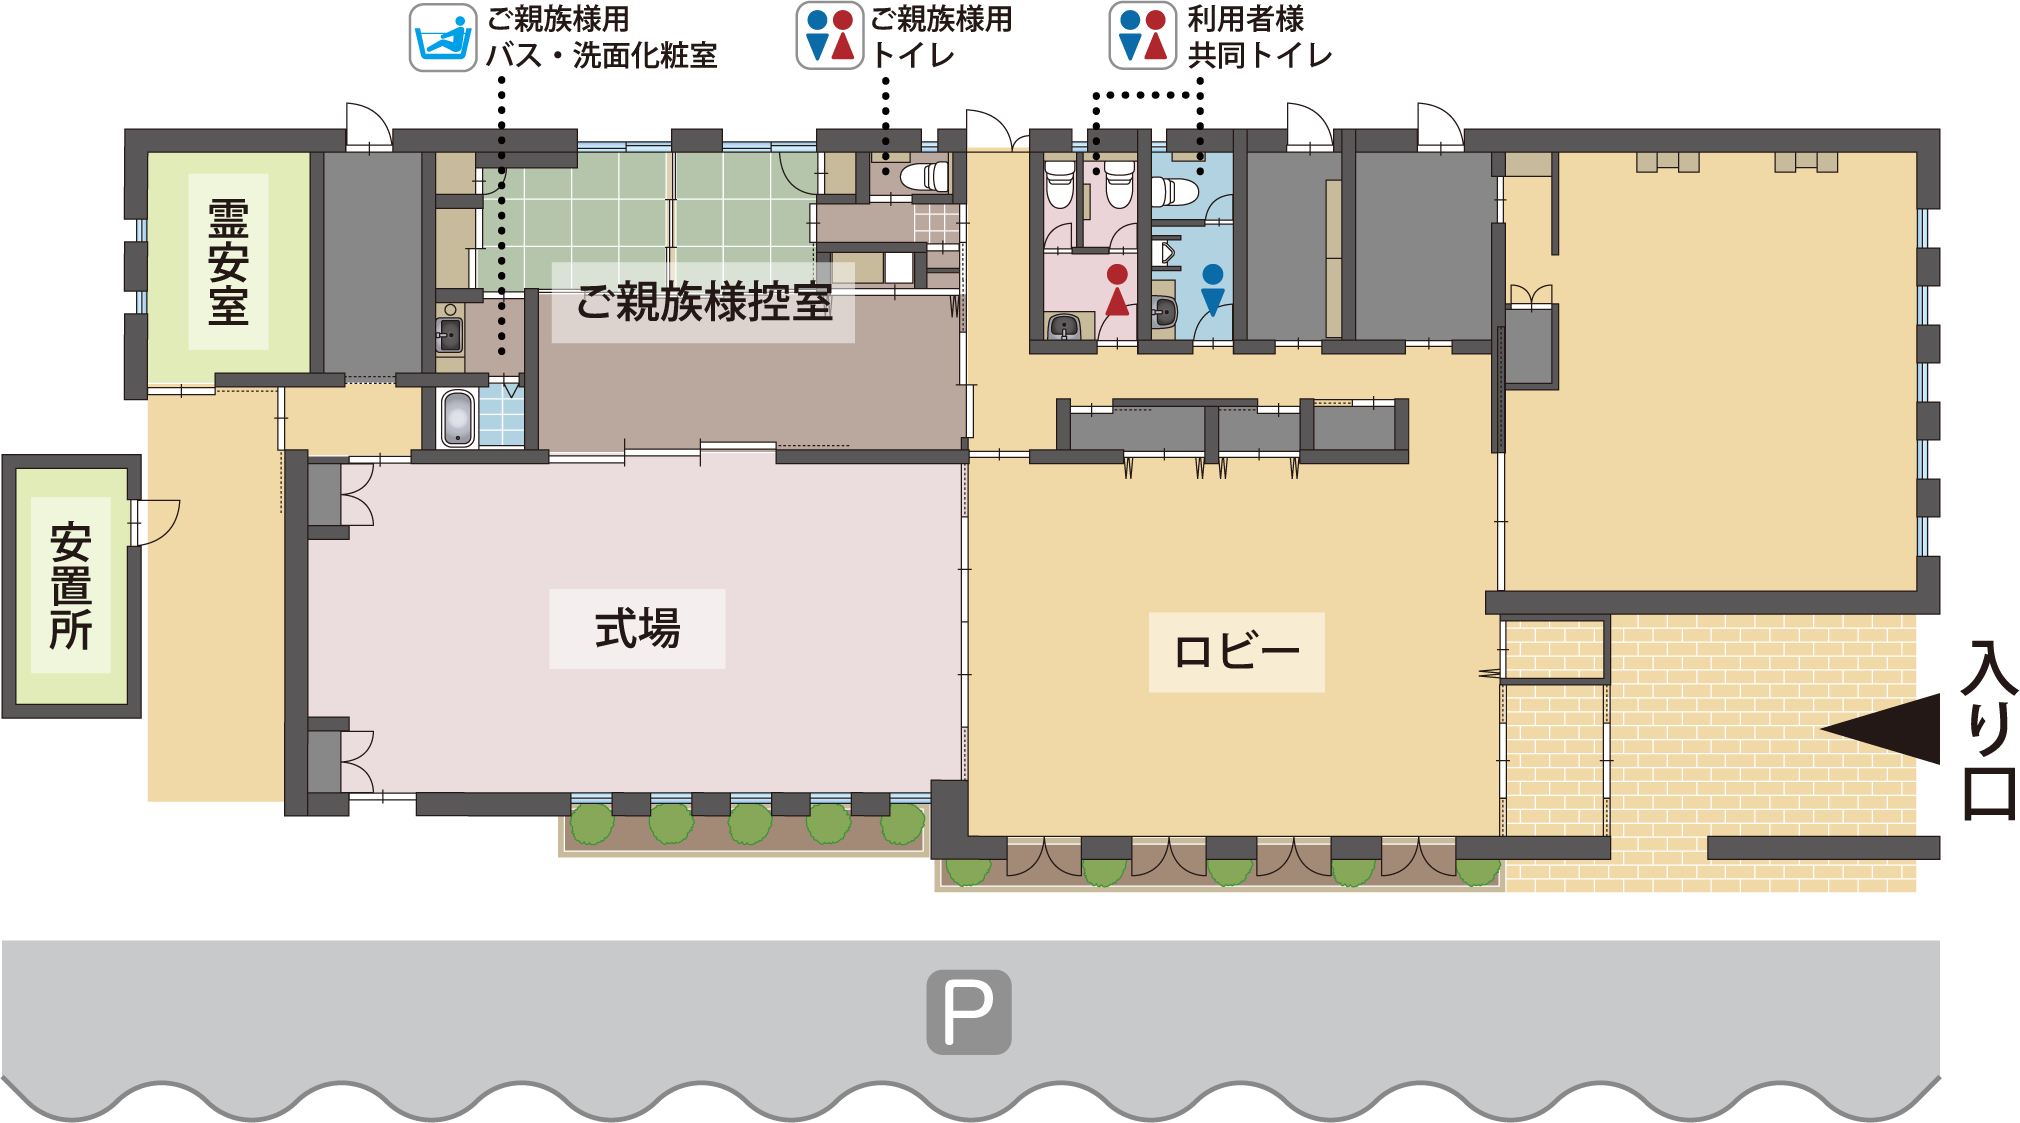 ハート・ホール和館内マップ